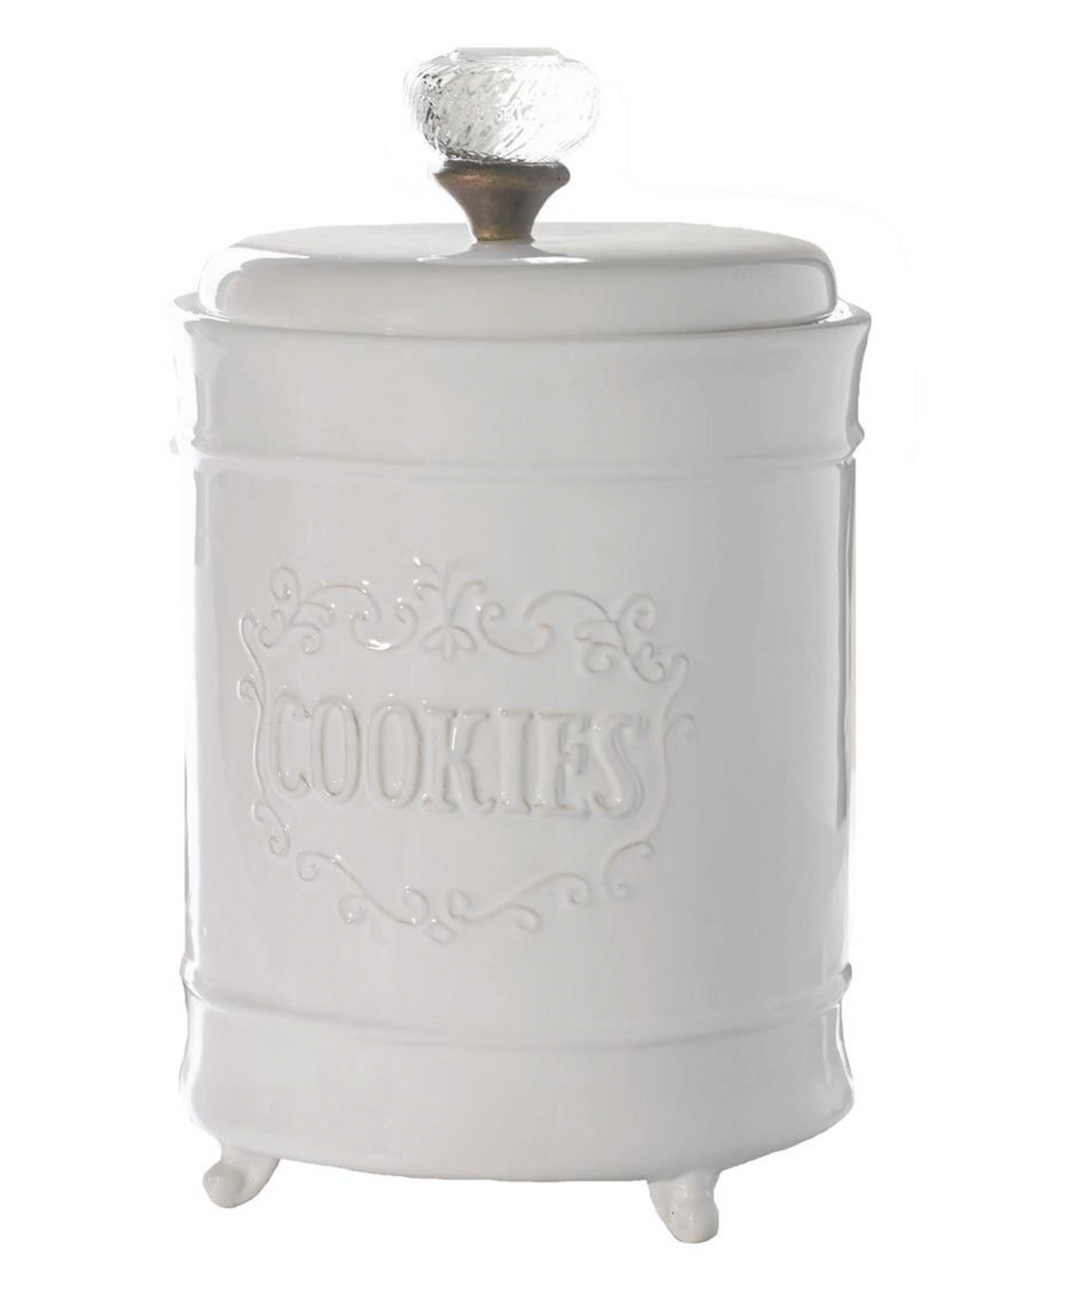 Vintage Style Cookie Jar